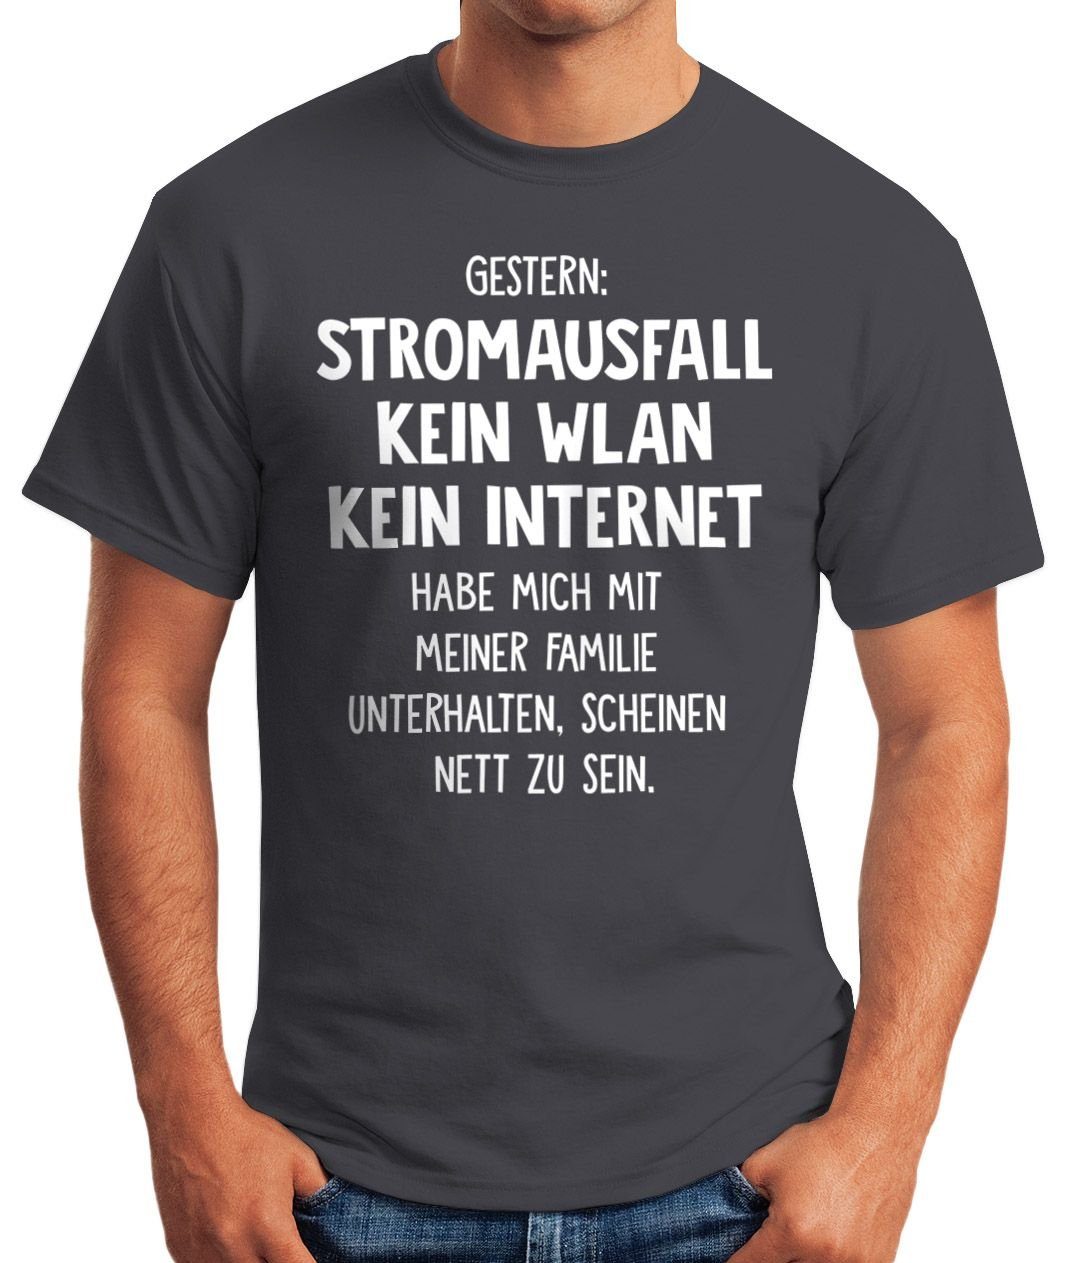 MoonWorks Print-Shirt Herren T-Shirt Stromausfall Spruch-Shirt Gestern: grau Kein mit Internet Print Kein WLAN Moonworks®